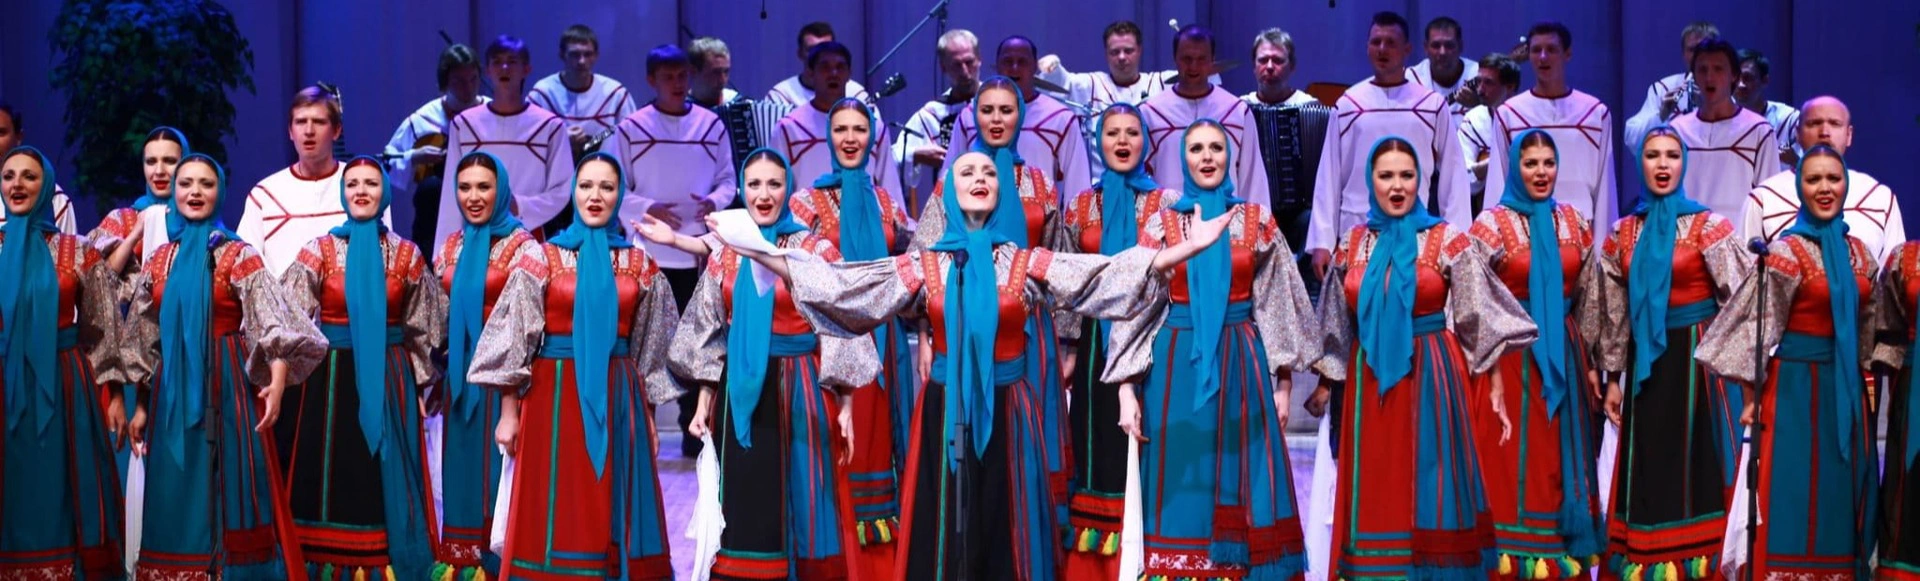 Русский народный хор имени М.Е. Пятницкого. Юбилейный концерт